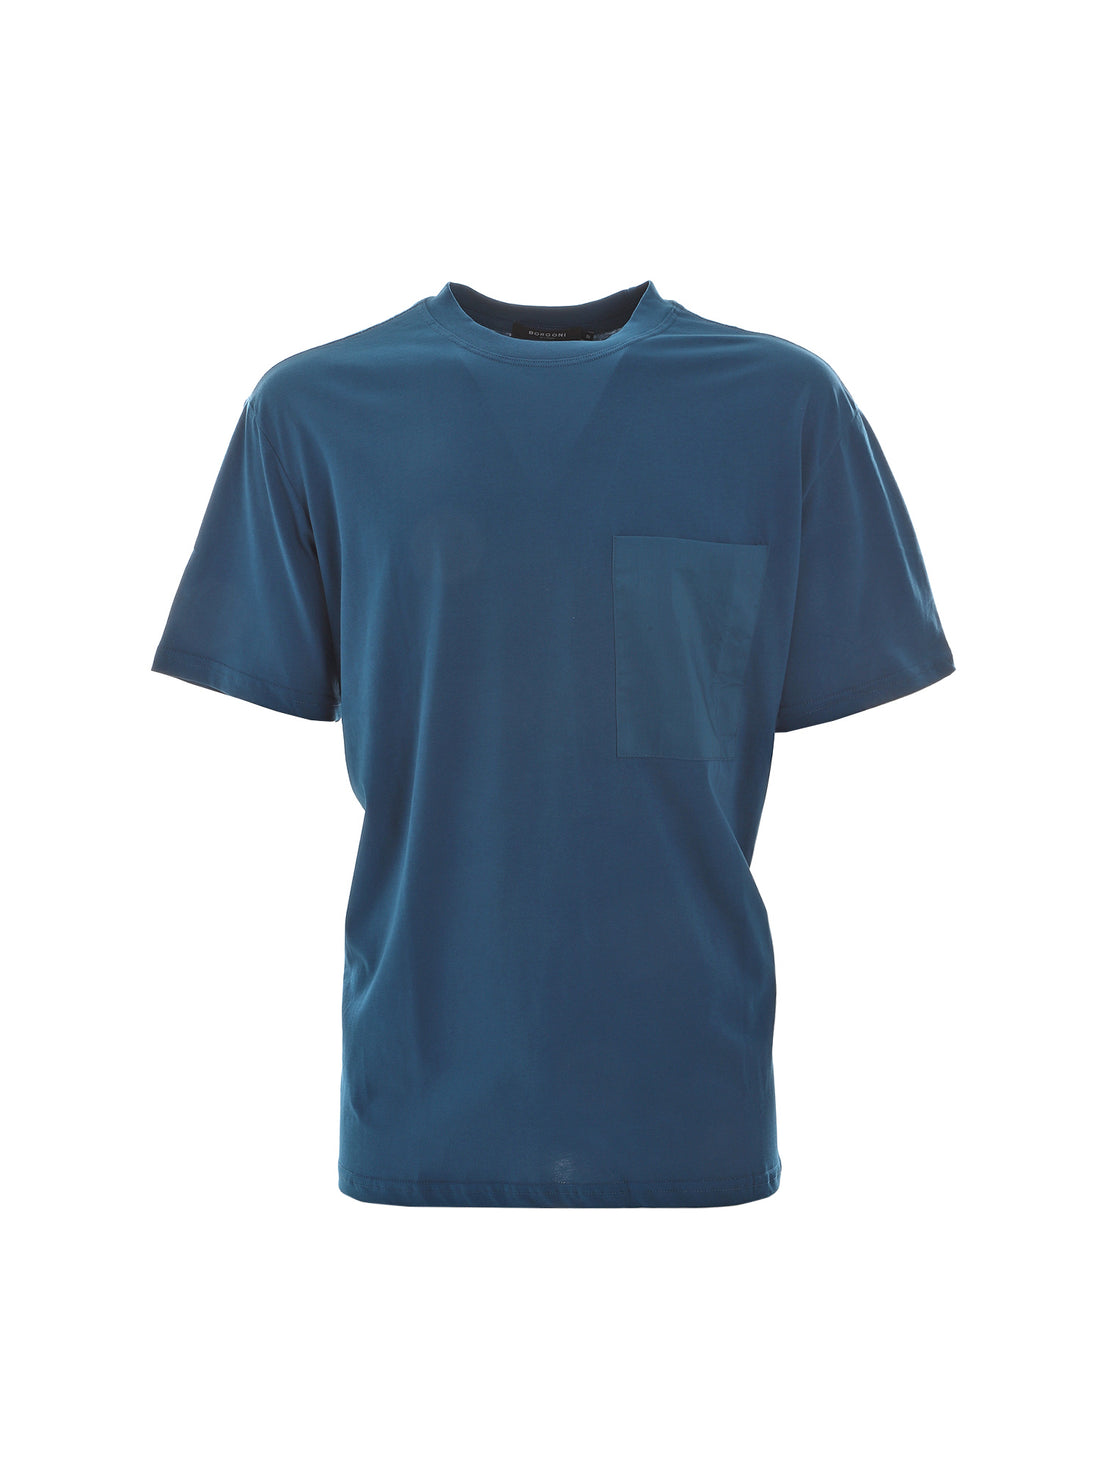 T-shirt Blu Borgoni Milano